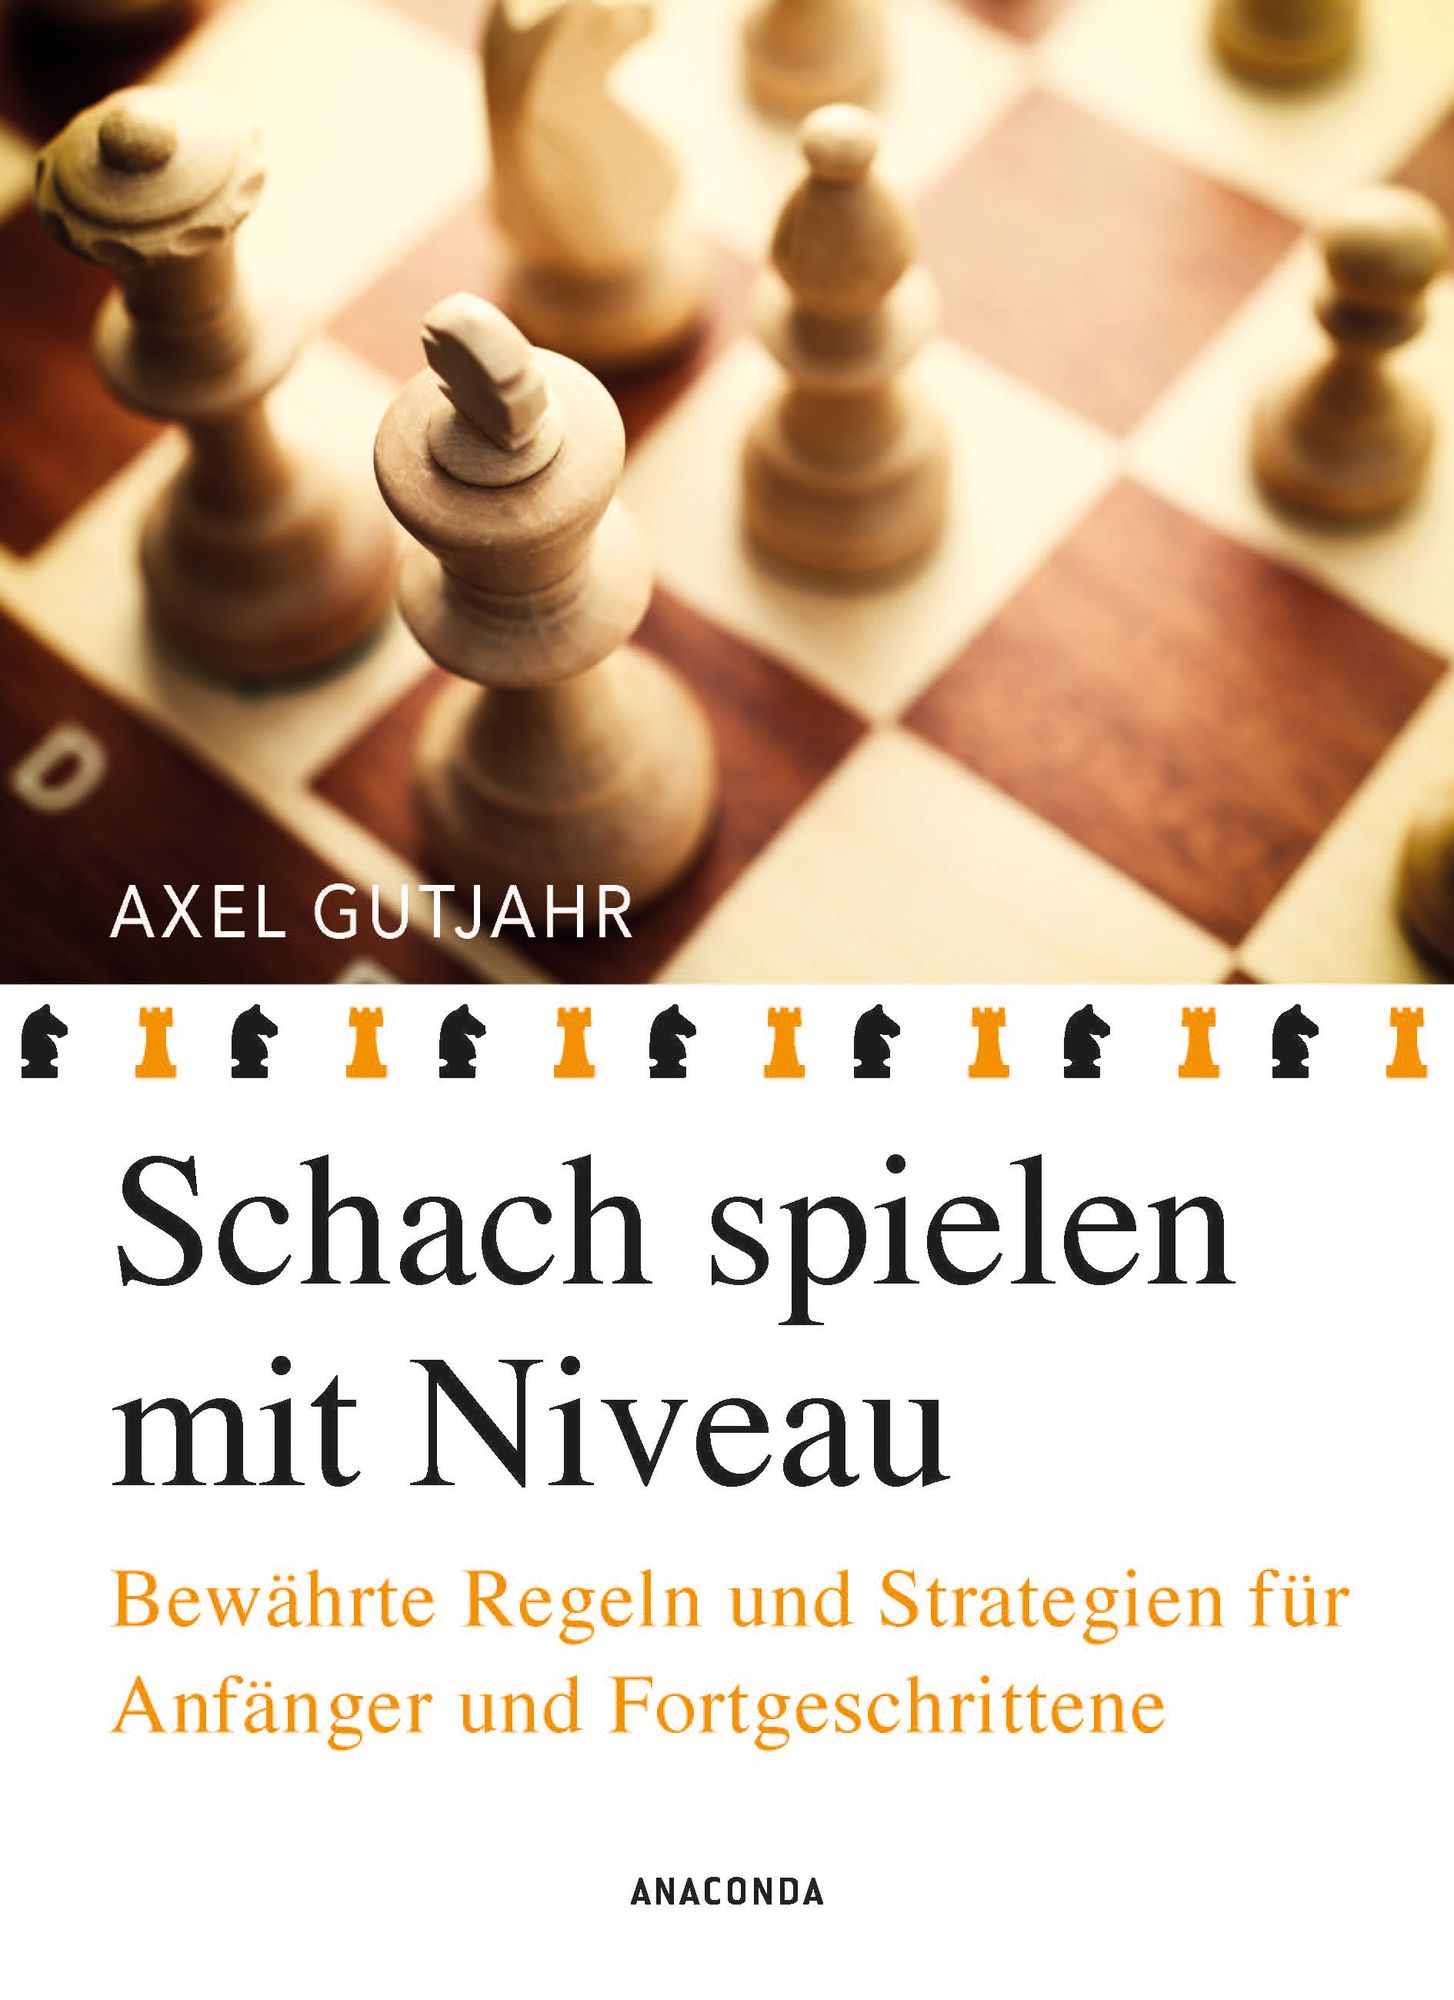 Schach spielen mit Niveau von Axel Gutjahr - Buch